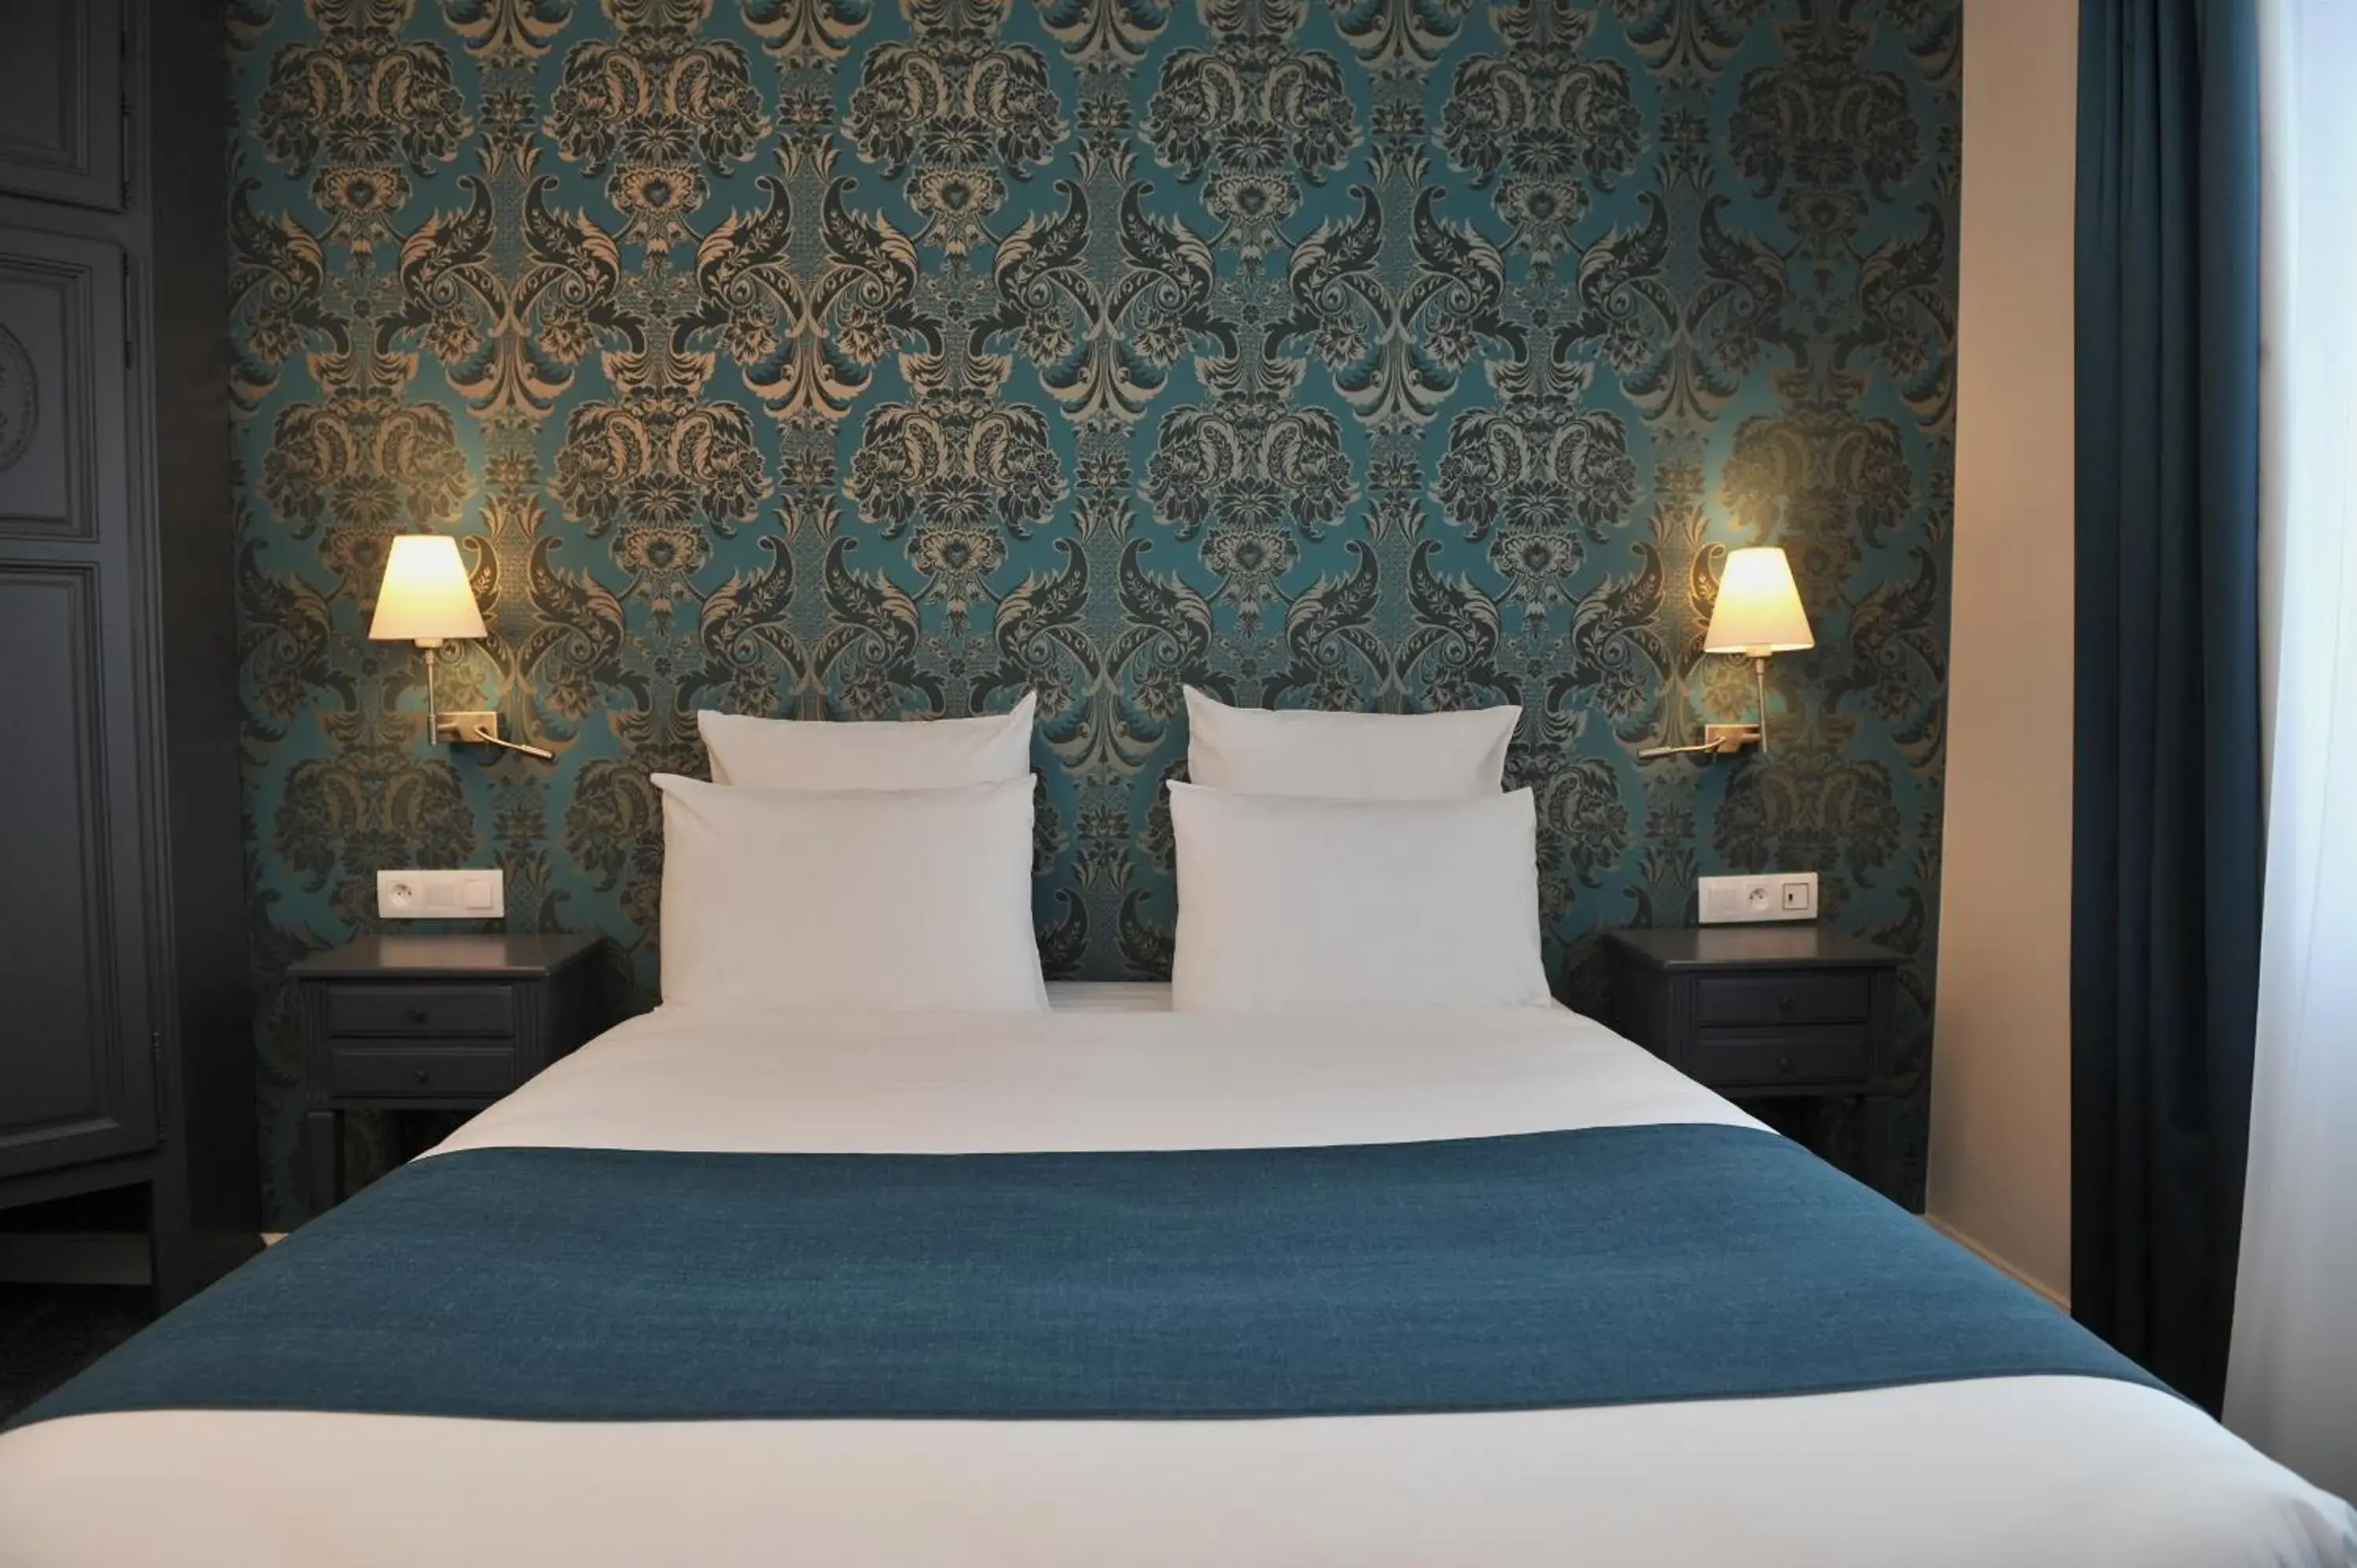 Bed, Room Photo in Mercure Paris Saint Cloud Hippodrome